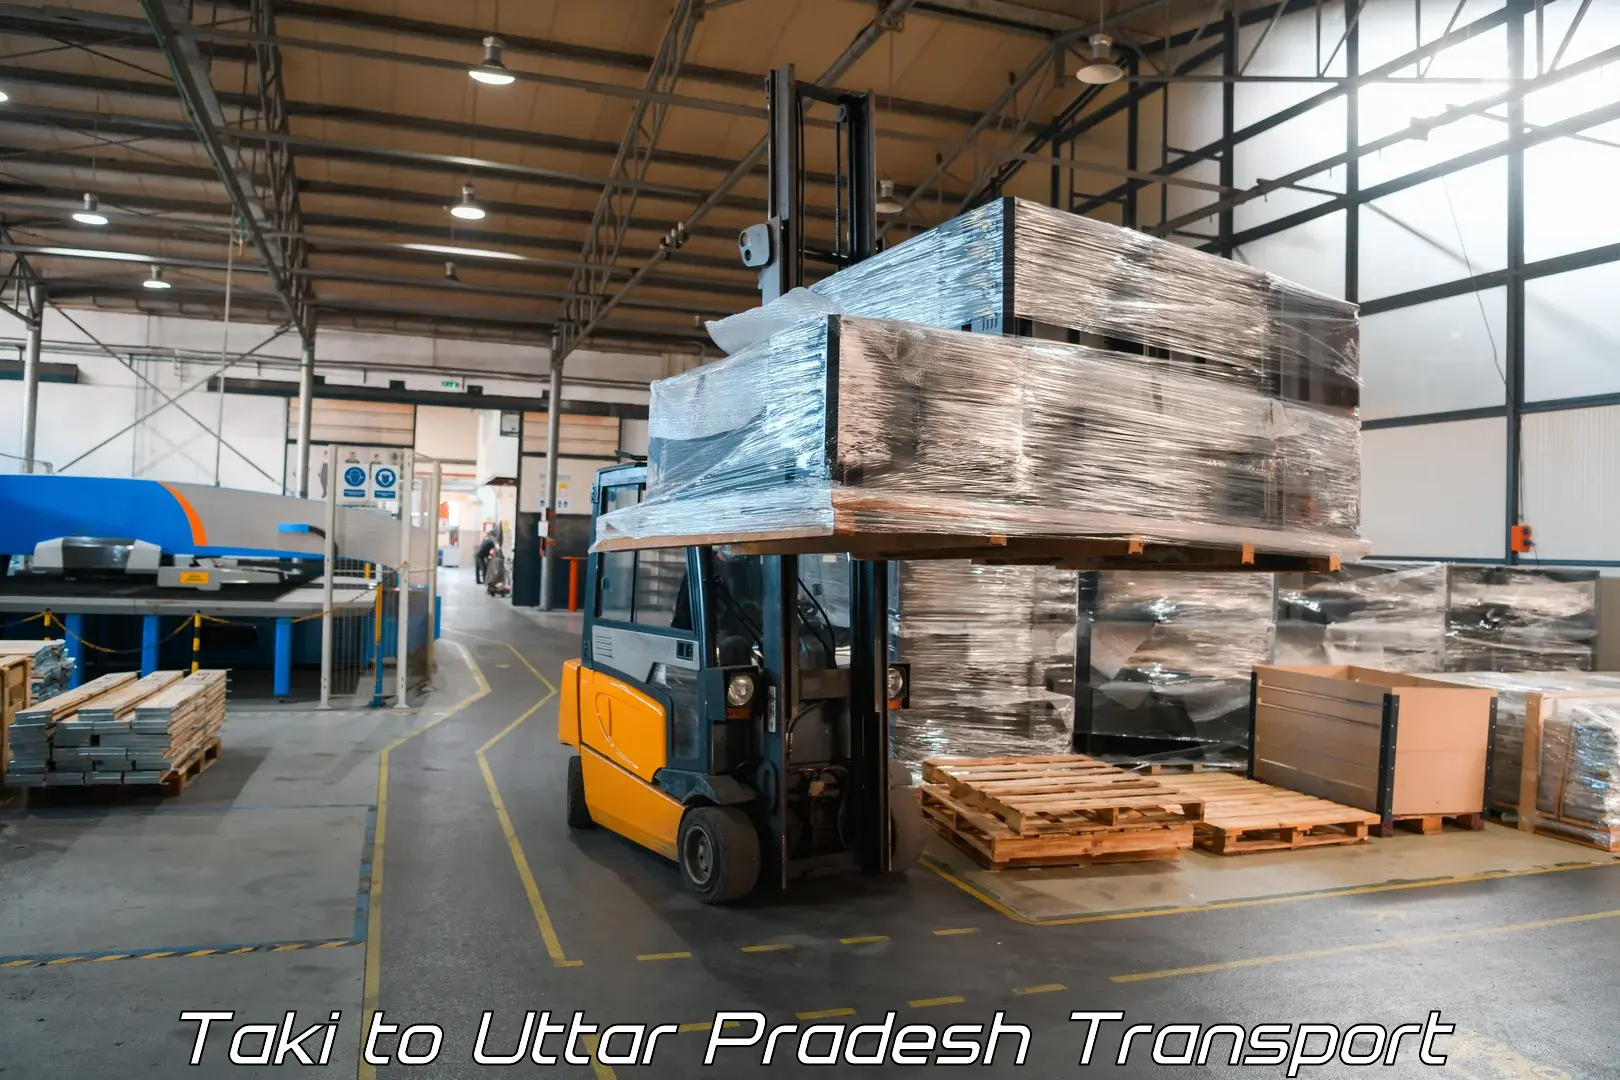 Daily parcel service transport in Taki to Uttar Pradesh